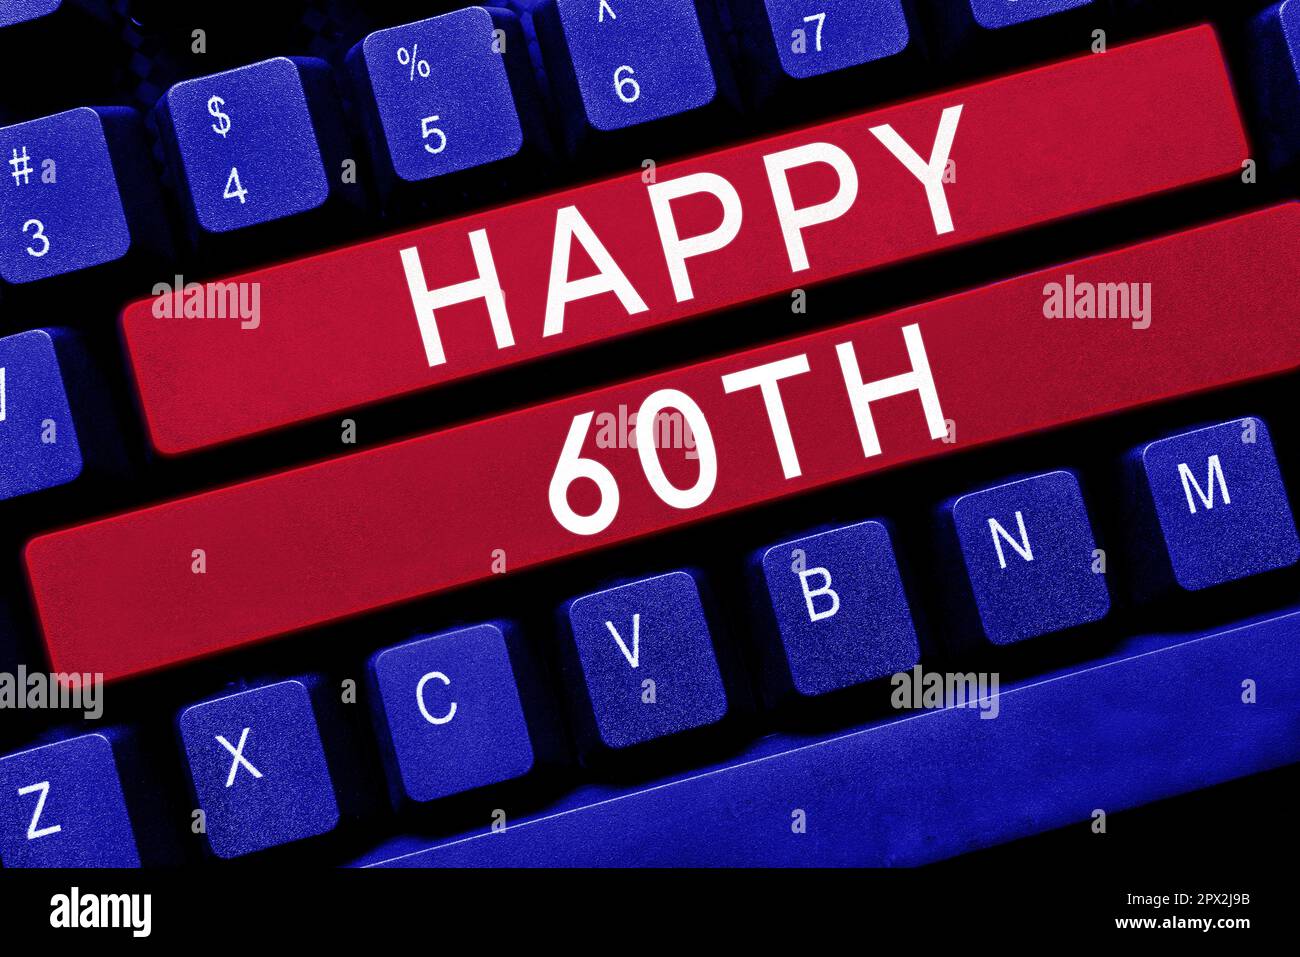 Texte d'écriture Happy 60th, Business concept une occasion joyeuse pour un événement spécial pour marquer l'année 60th Banque D'Images